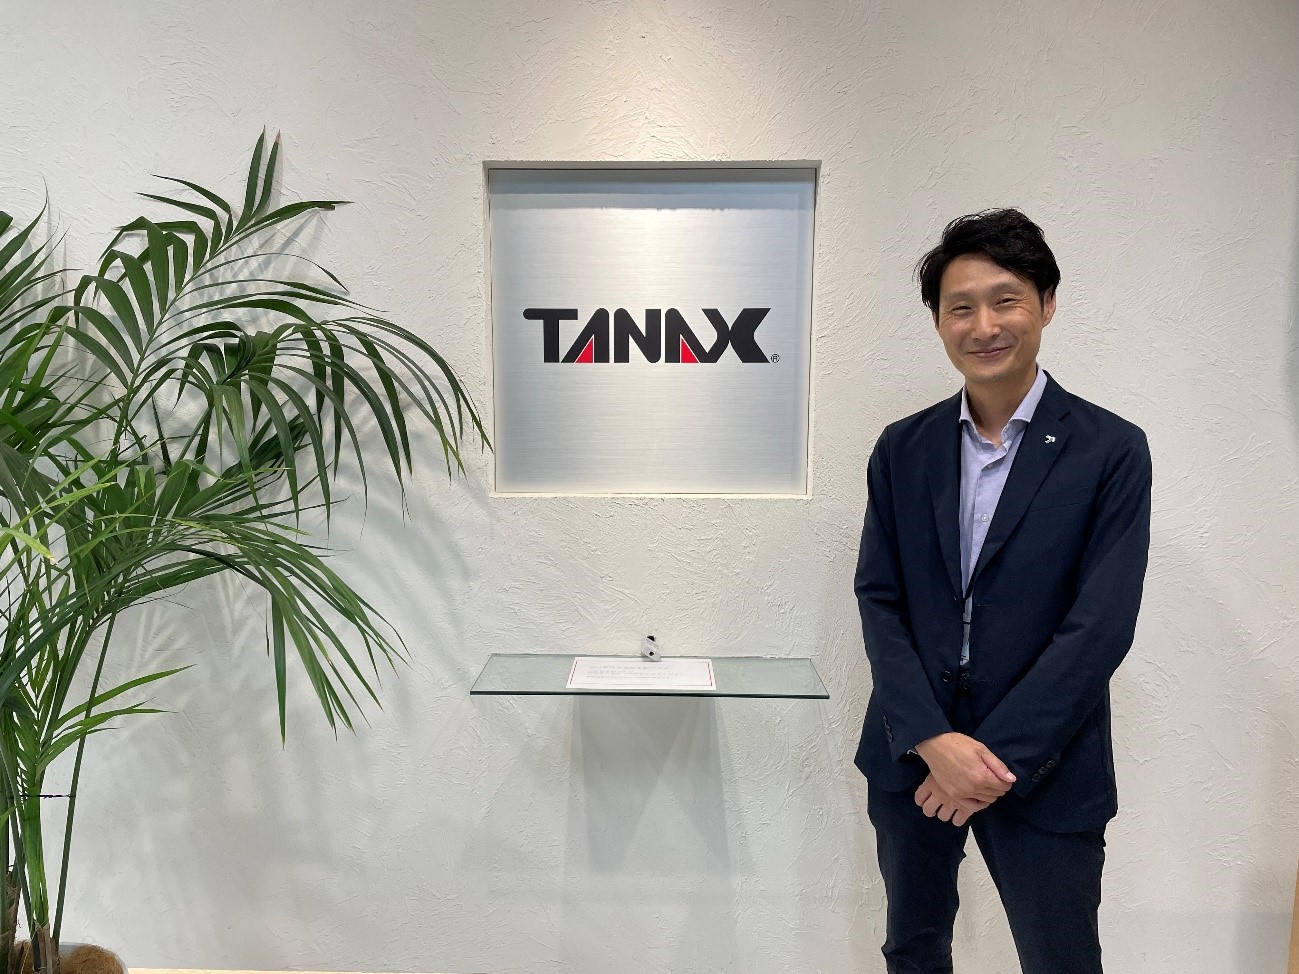 株式会社TANAX